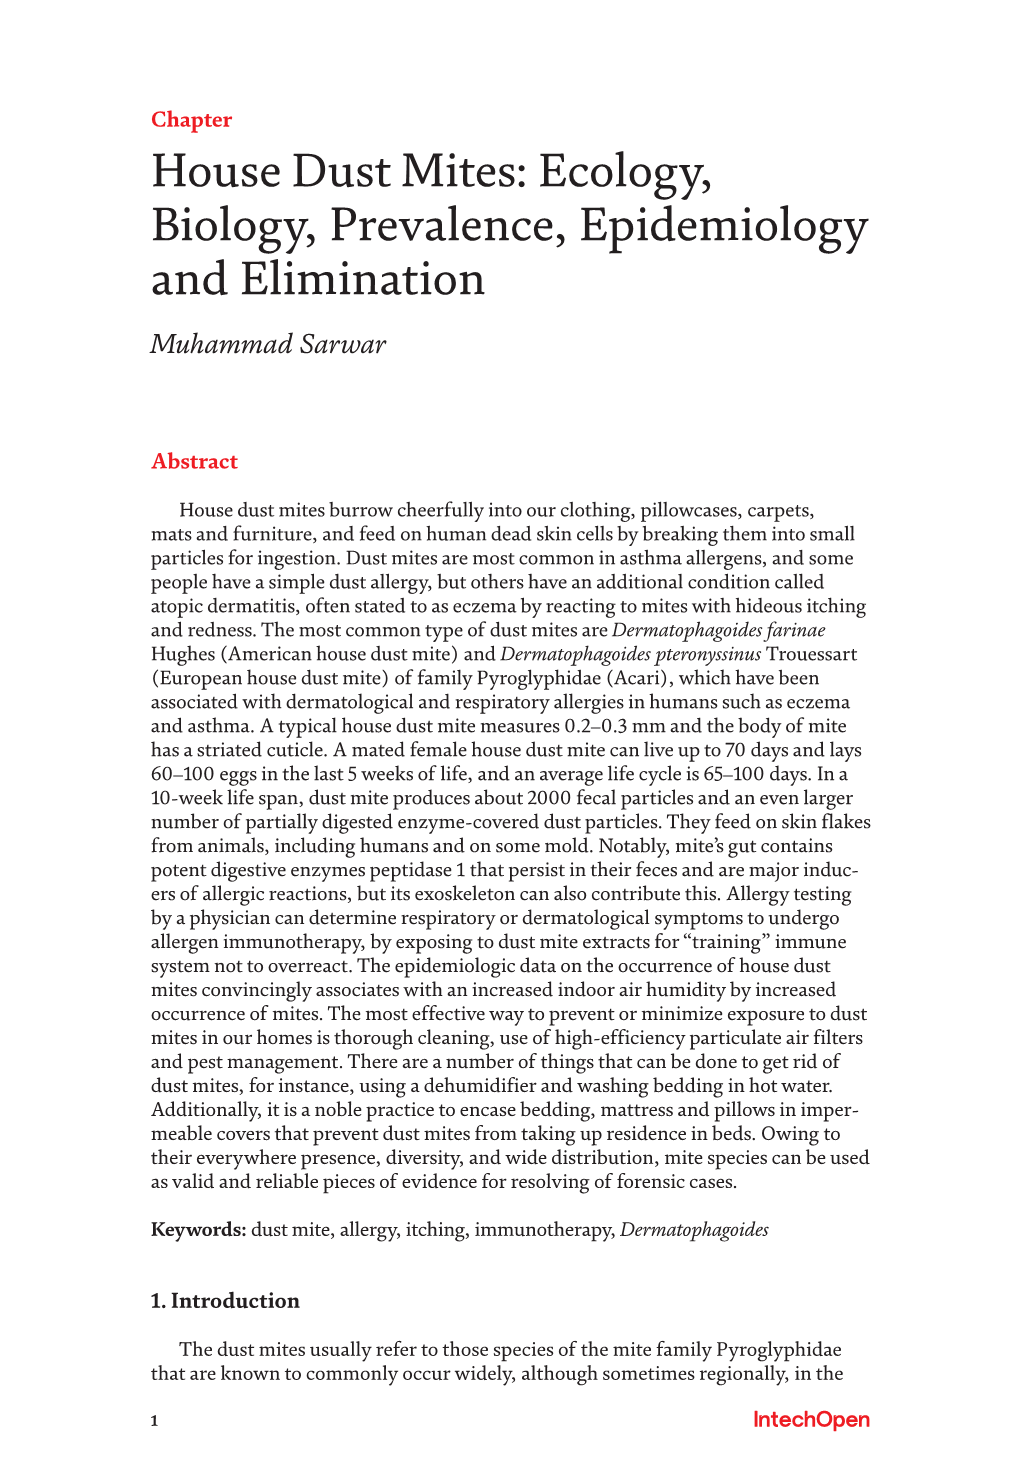 House Dust Mites: Ecology, Biology, Prevalence, Epidemiology and Elimination Muhammad Sarwar